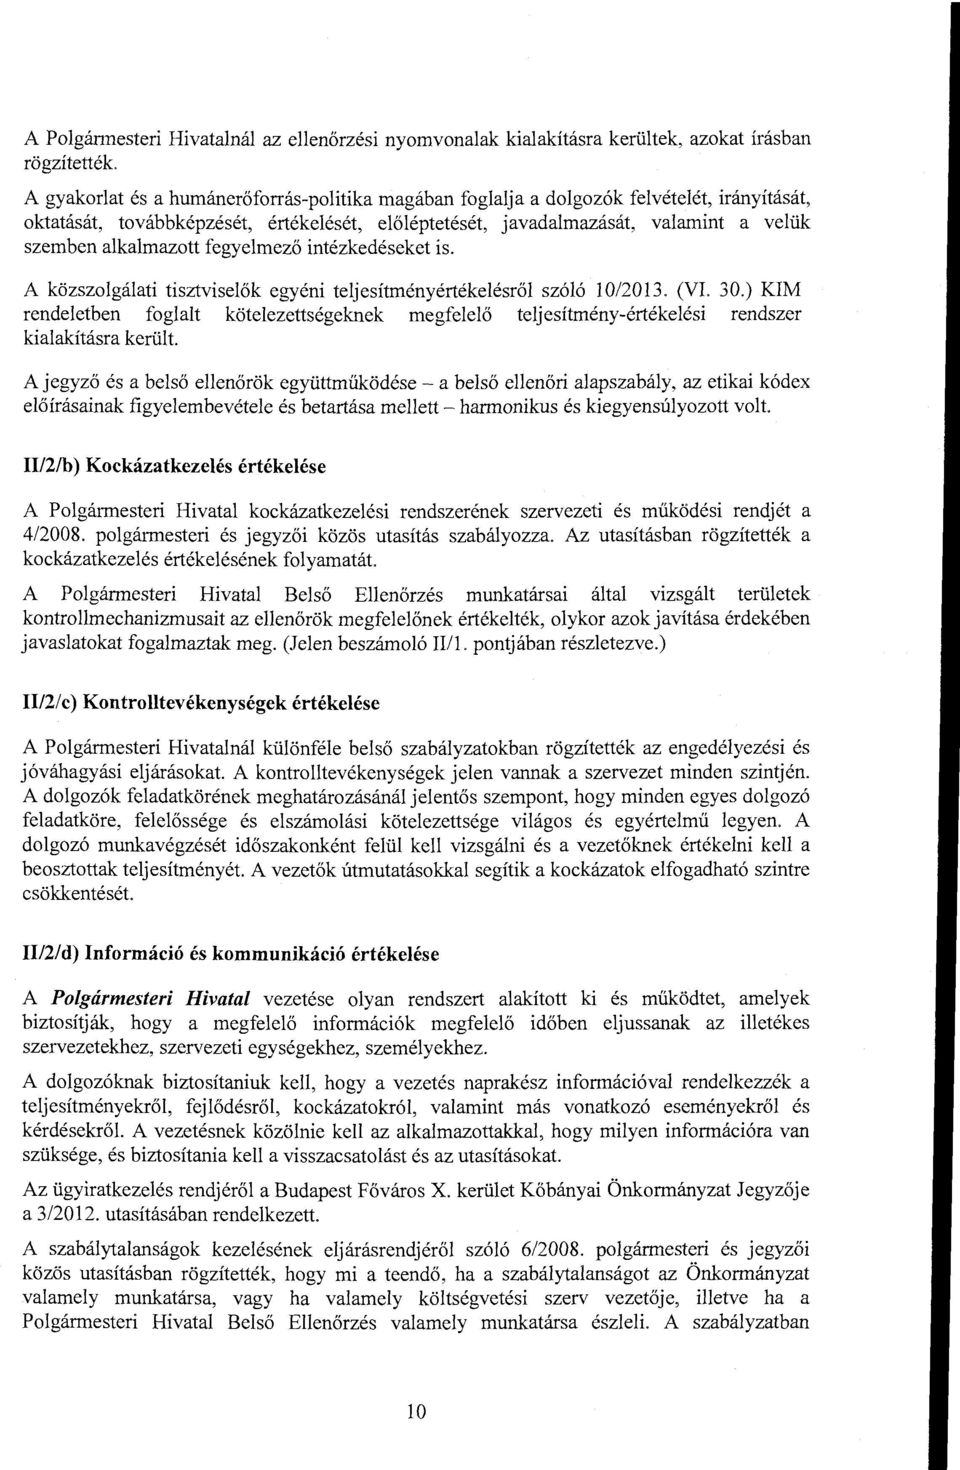 A közszolgálati tisztviselők egyéni teljesítményértékelésről szóló 10/2013. (VI. 30.) KIM rendeletben foglalt kötelezettségeknek megfelelő teljesítmény-értékelési rendszer kialakításra kerül t.